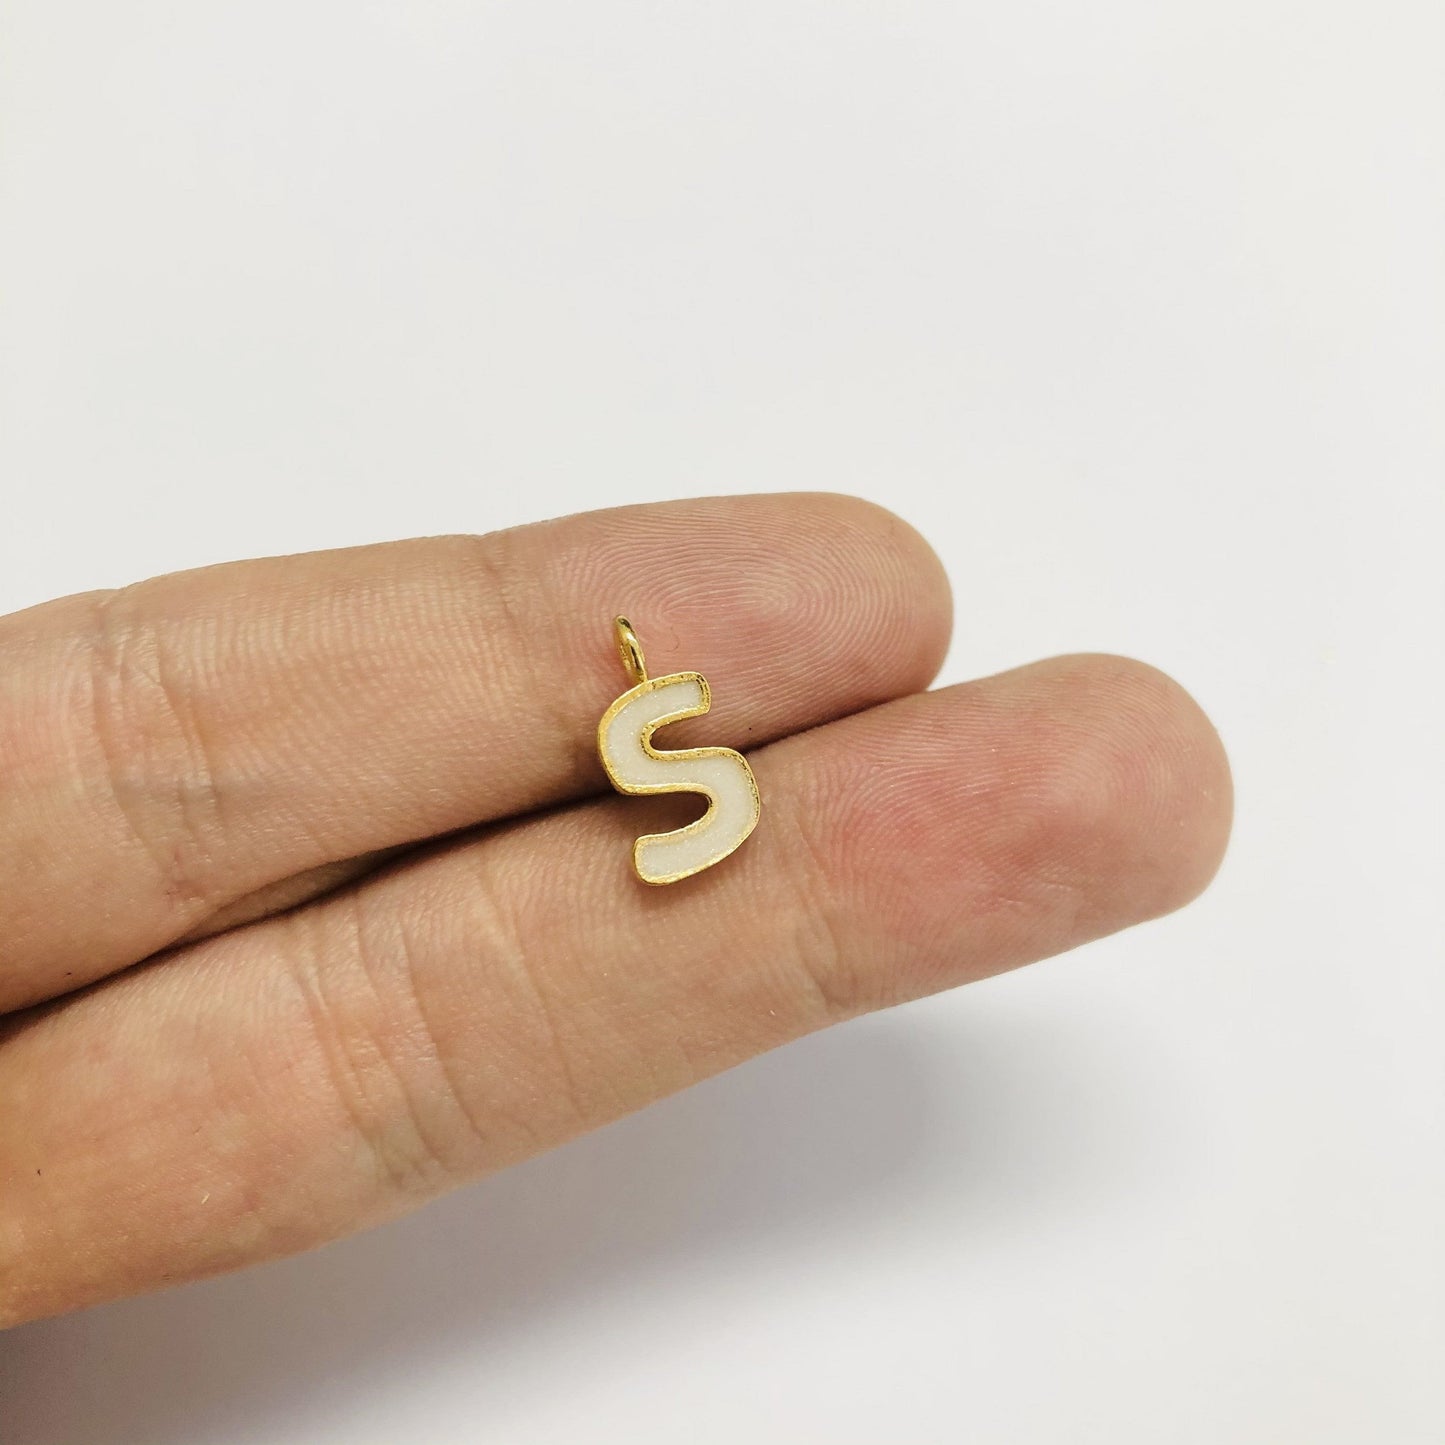 Vergoldete Emaille-Buchstaben-Hängevorrichtung – Perlmutt